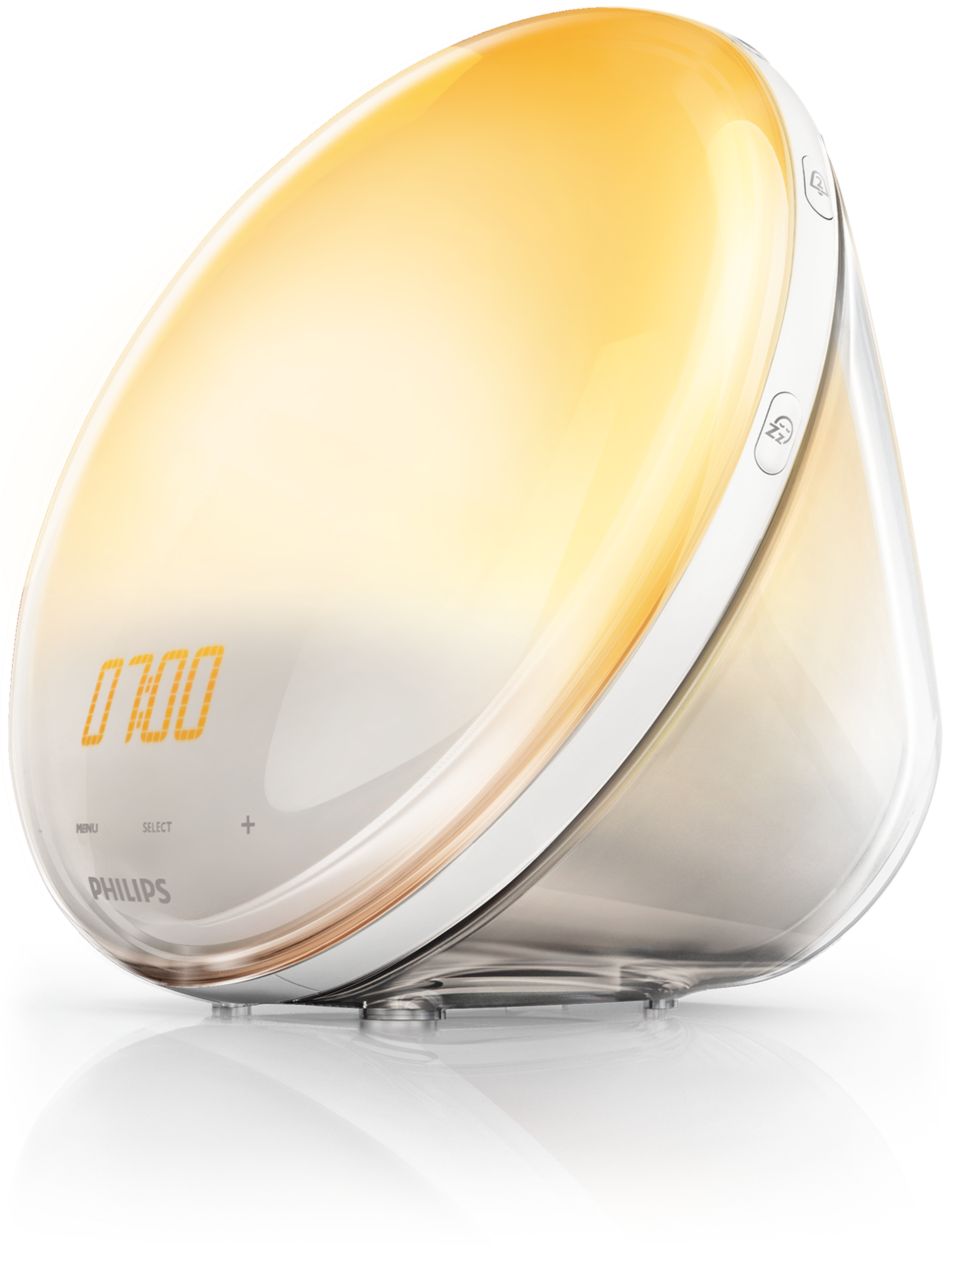 Groet Snoep Spanje Wake-up Light HF3531/60 | Philips